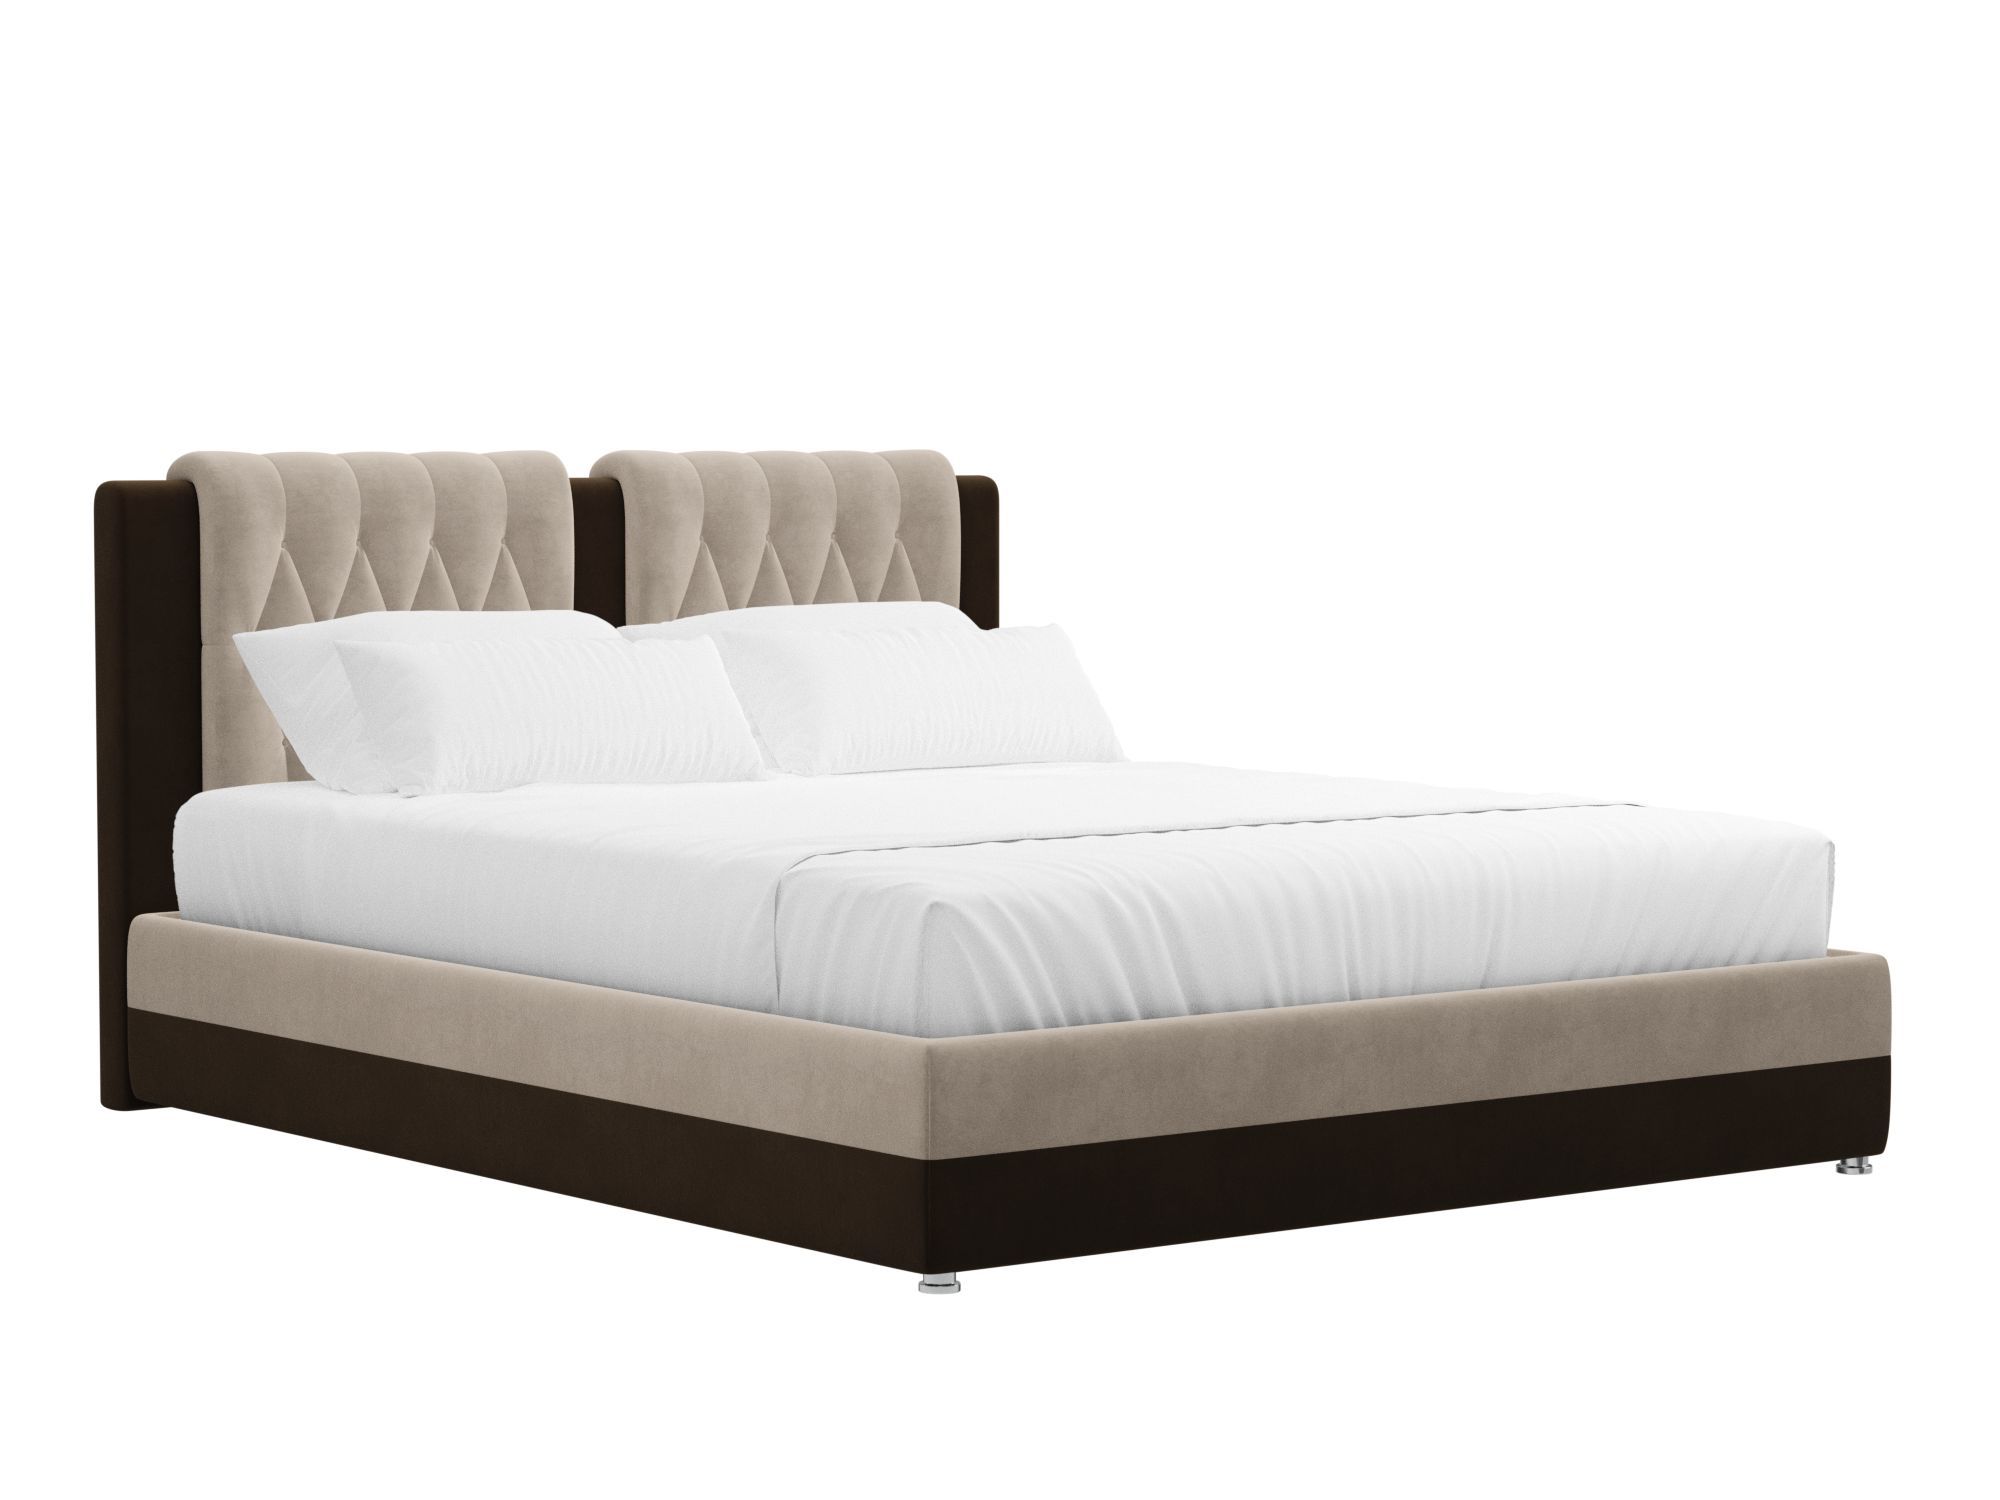 Кровать Камилла (160x200) Бежевый, Коричневый, ЛДСП интерьерная кровать артмебель камилла микровельвет бежево коричневый